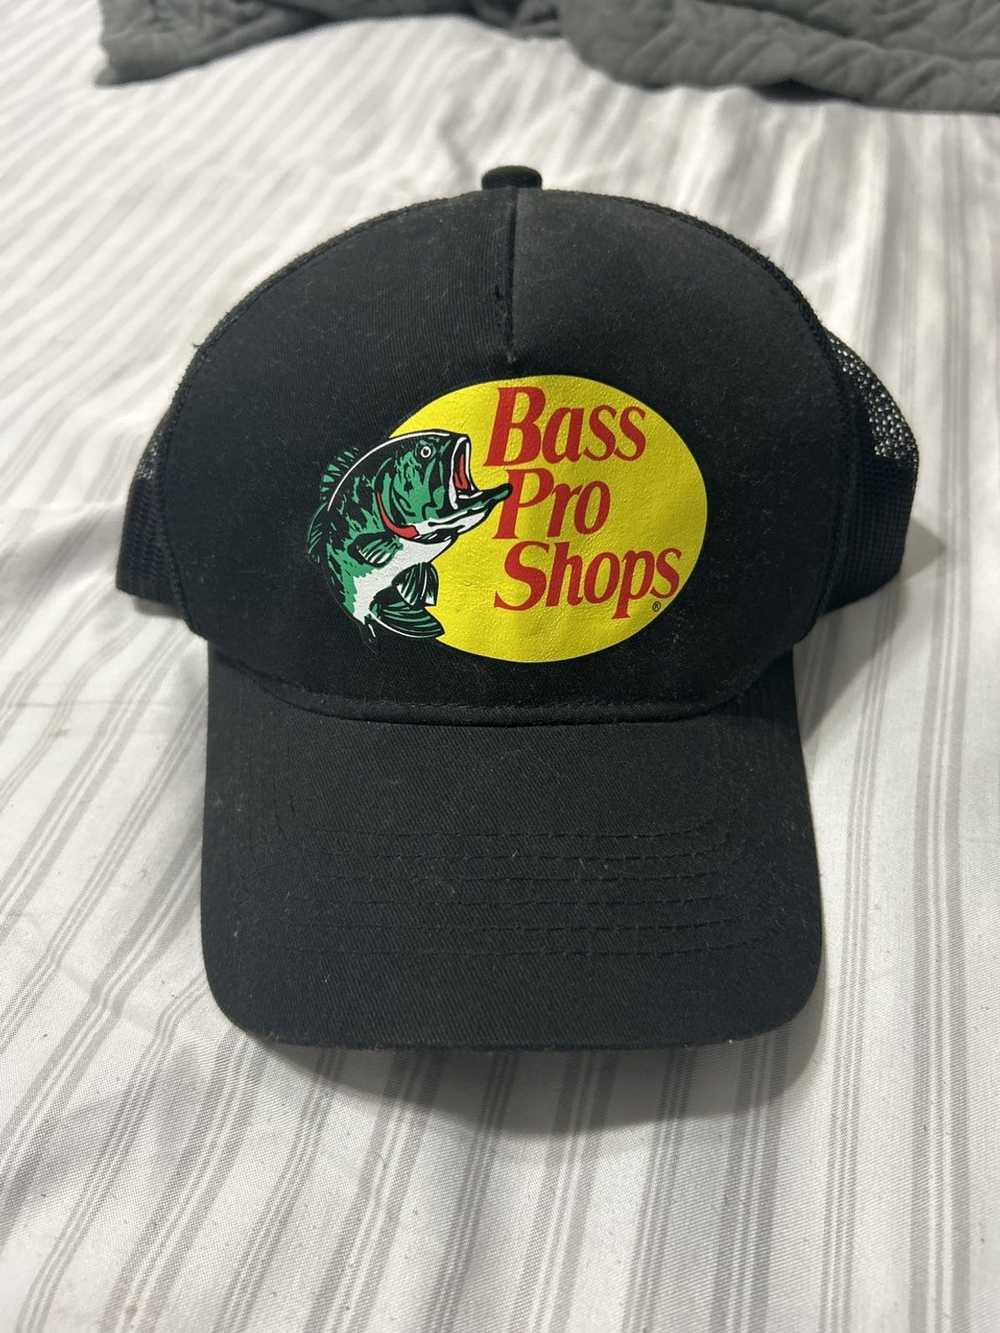 Bass Pro Shops Bass Pro Shops Black Hat - image 1